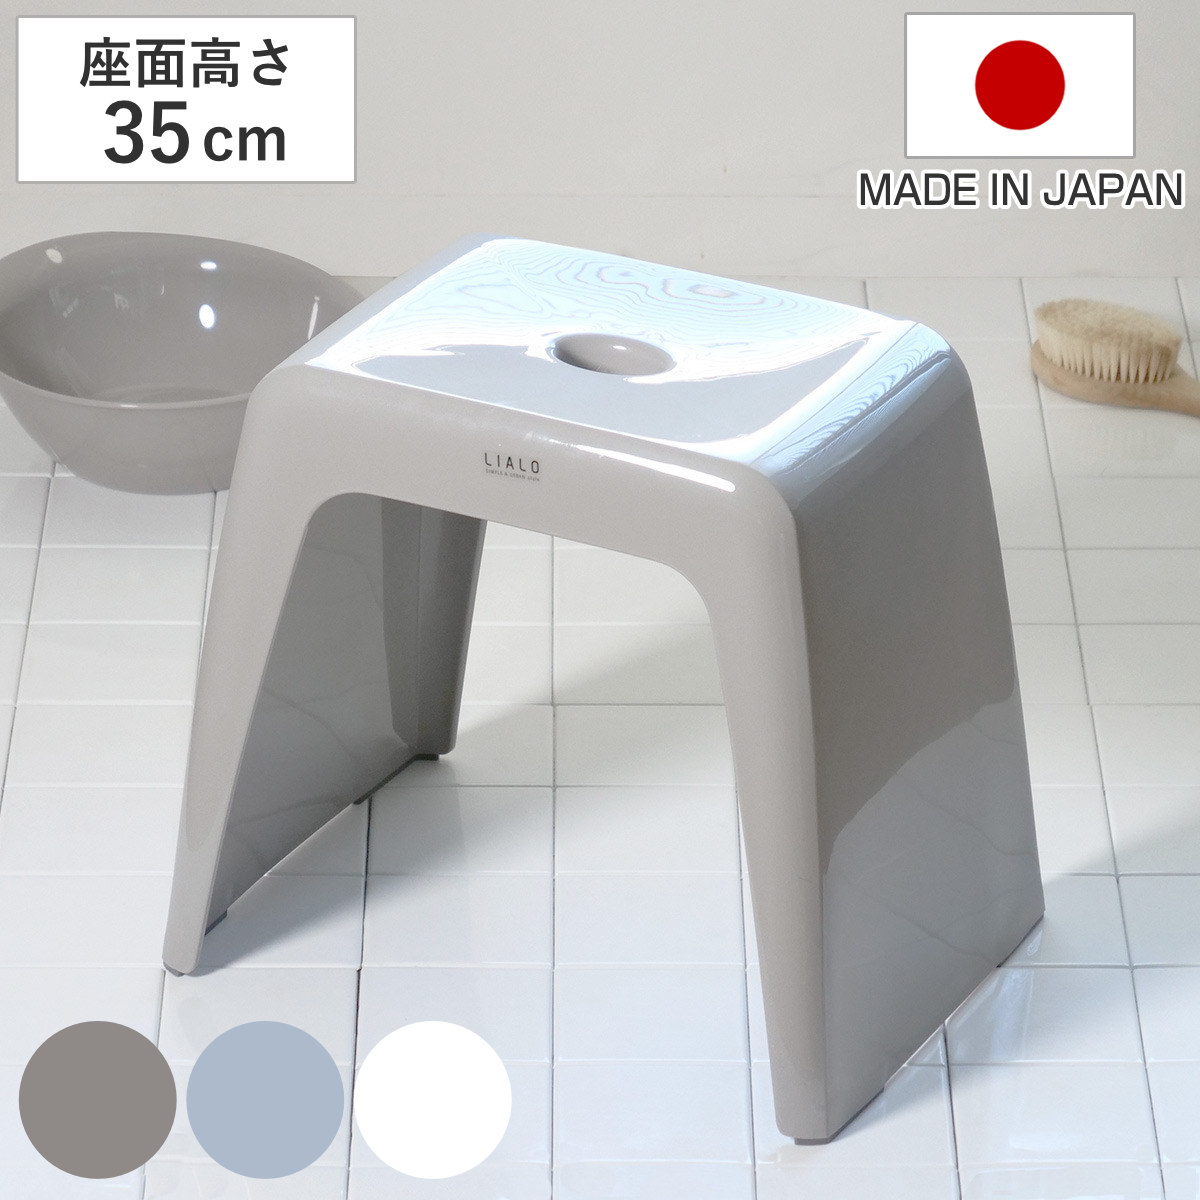 風呂椅子 リアロ 35cm 日本製